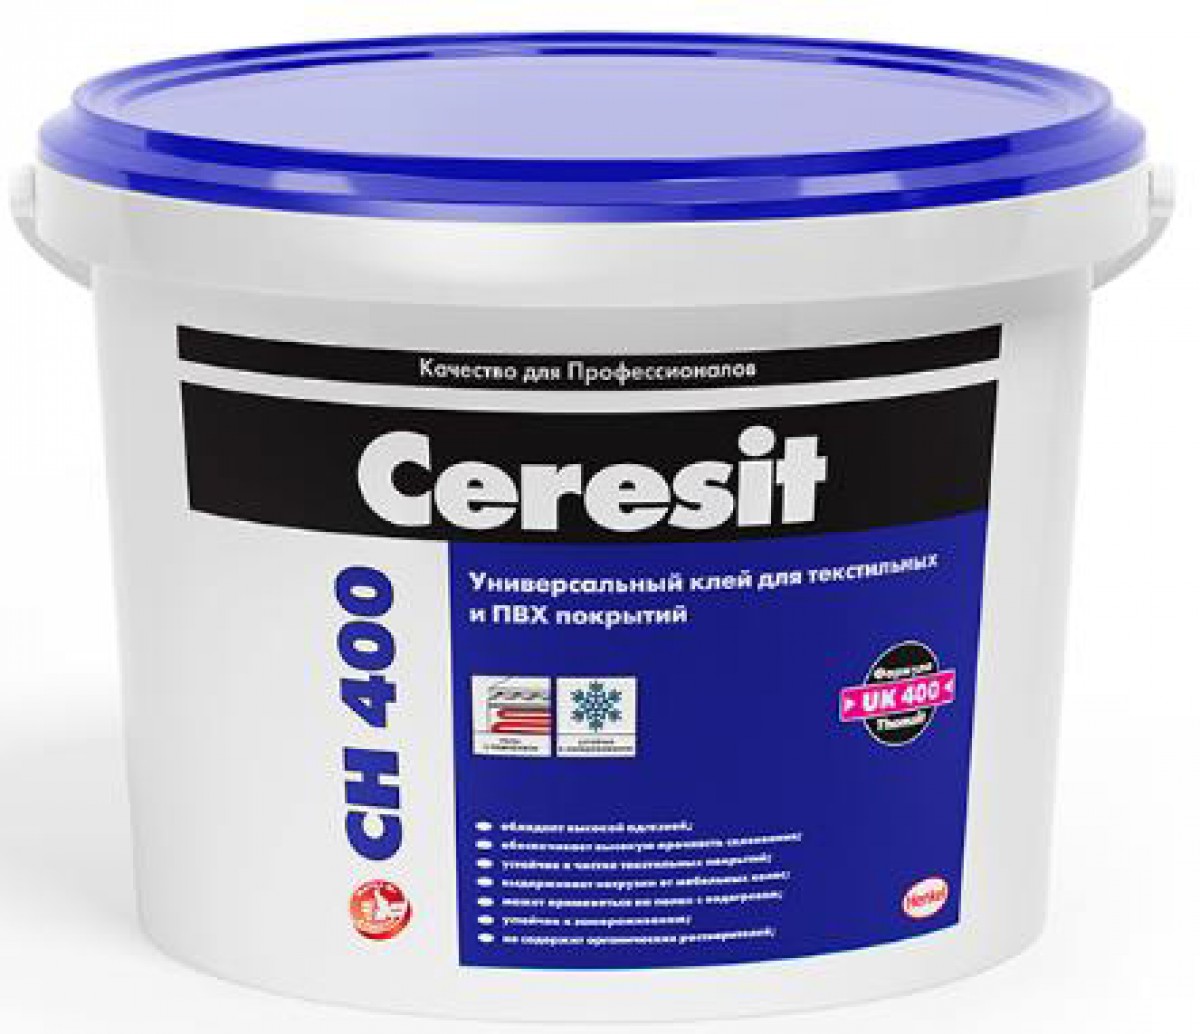 подробно Универсальный клей Ceresit CН 400 для ковролинов, ПВХ покрытий и натурального линолеума